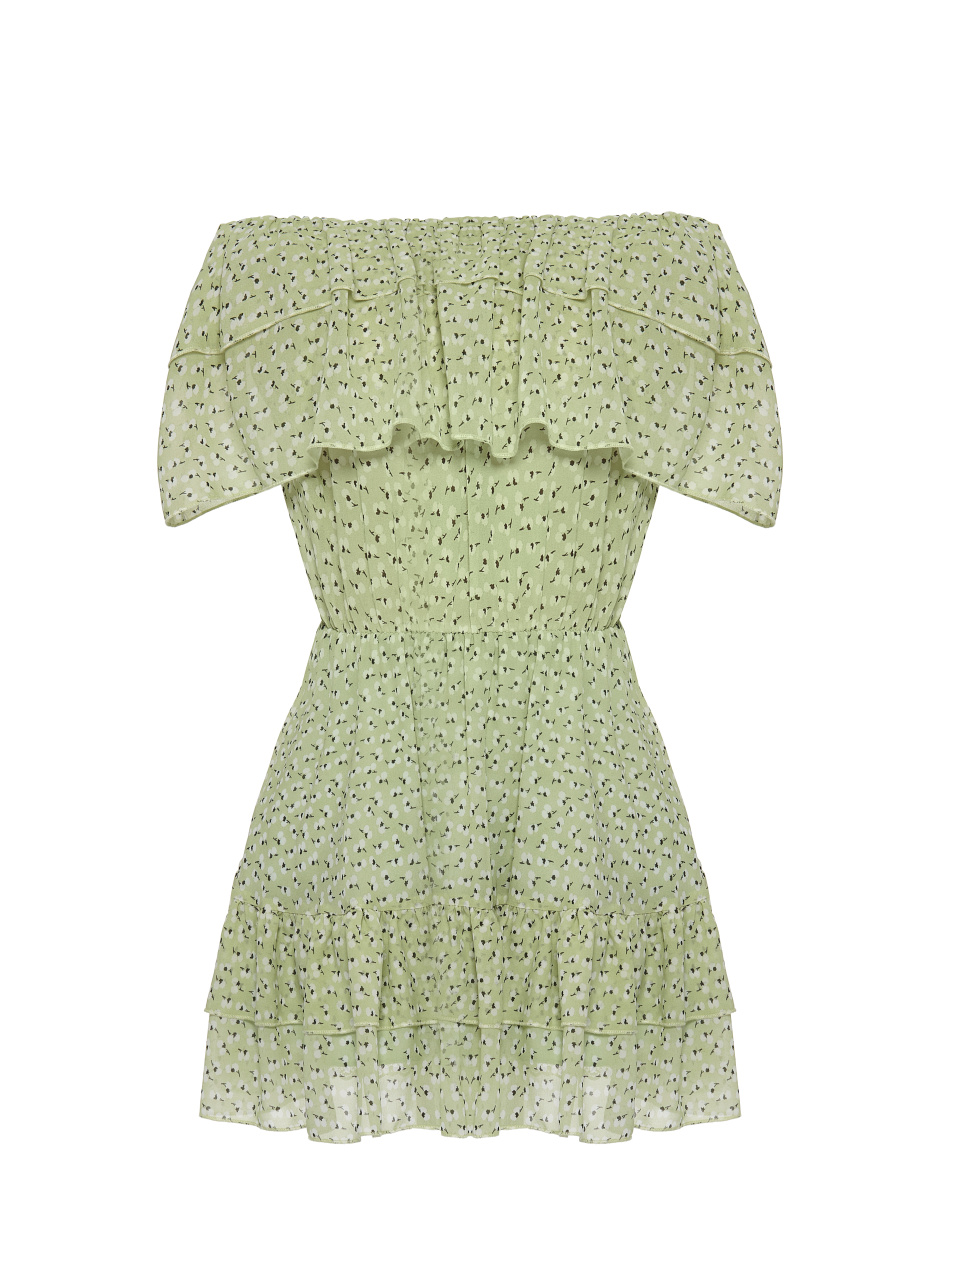 Светло-зеленое шифоновое платье-мини с открытыми плечами, 1